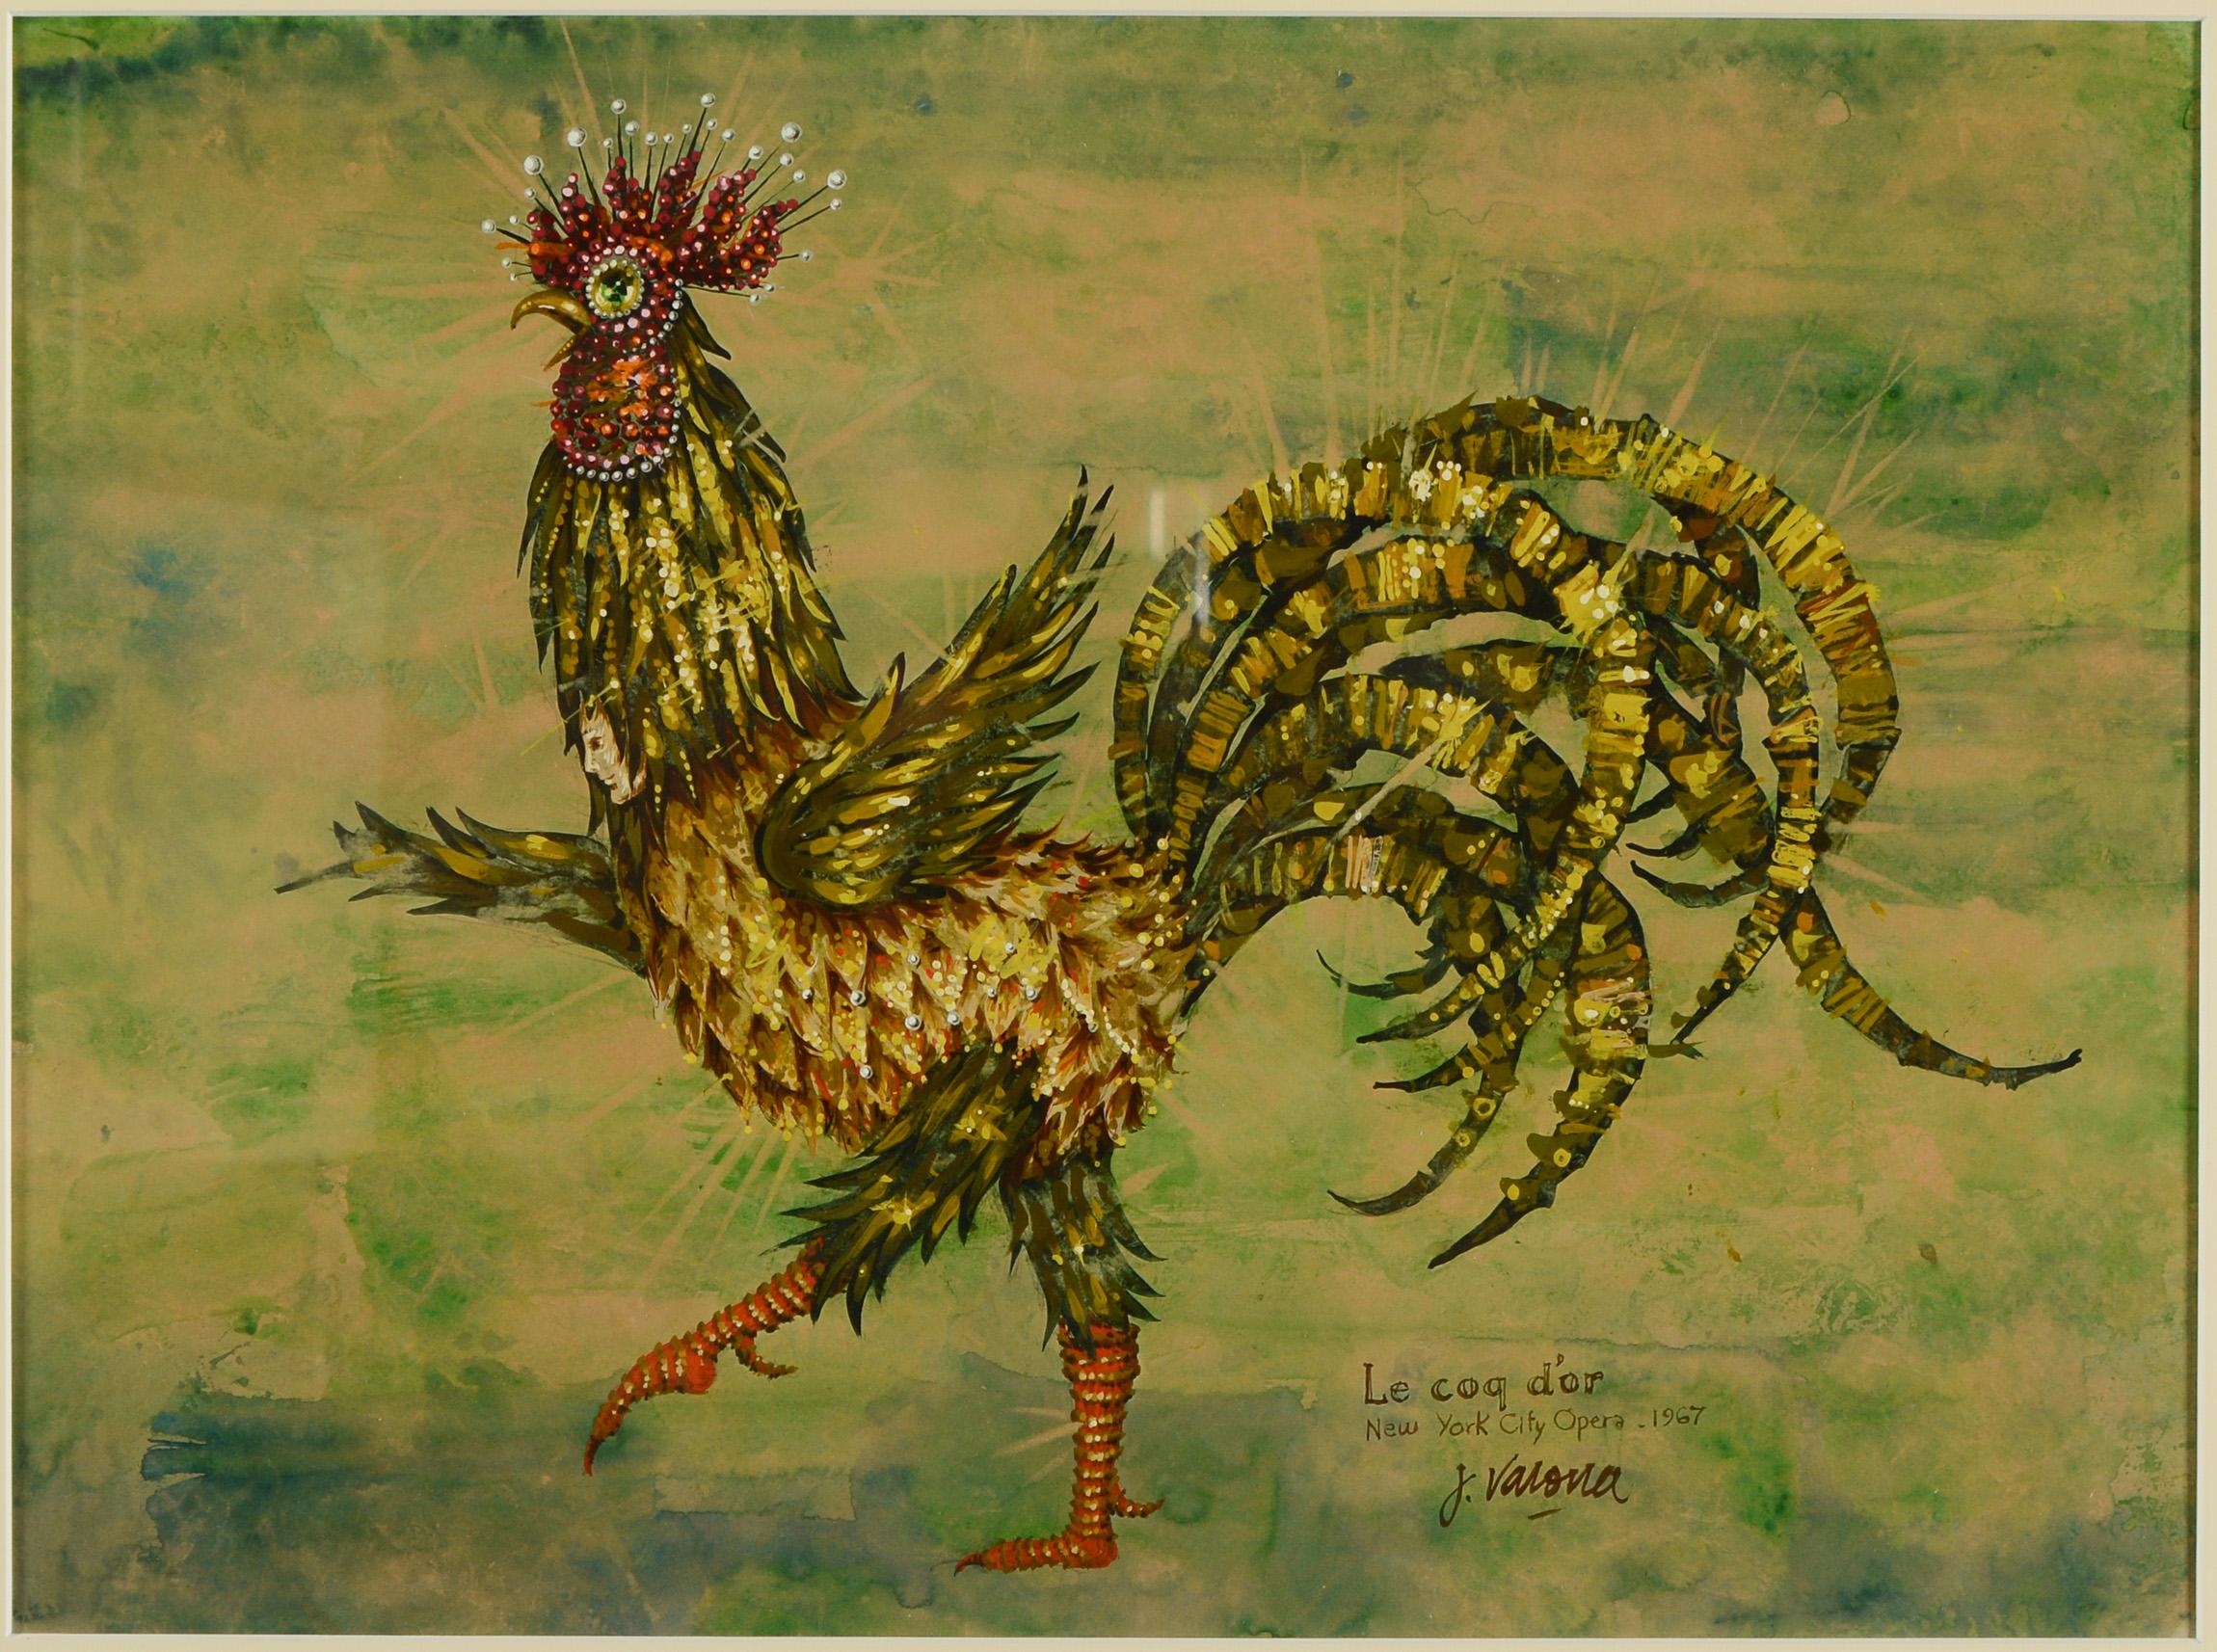 Endgültige Kostümzeichnung von Jose Varona für die Inszenierung von Le Coq d'Or (Der Goldene Hahn) an der New York City Opera von 1967. Dieser Entwurf ist für die Titelfigur bestimmt. Die Zeichnung besteht aus Tusche, Aquarell und Gouache. Zwei